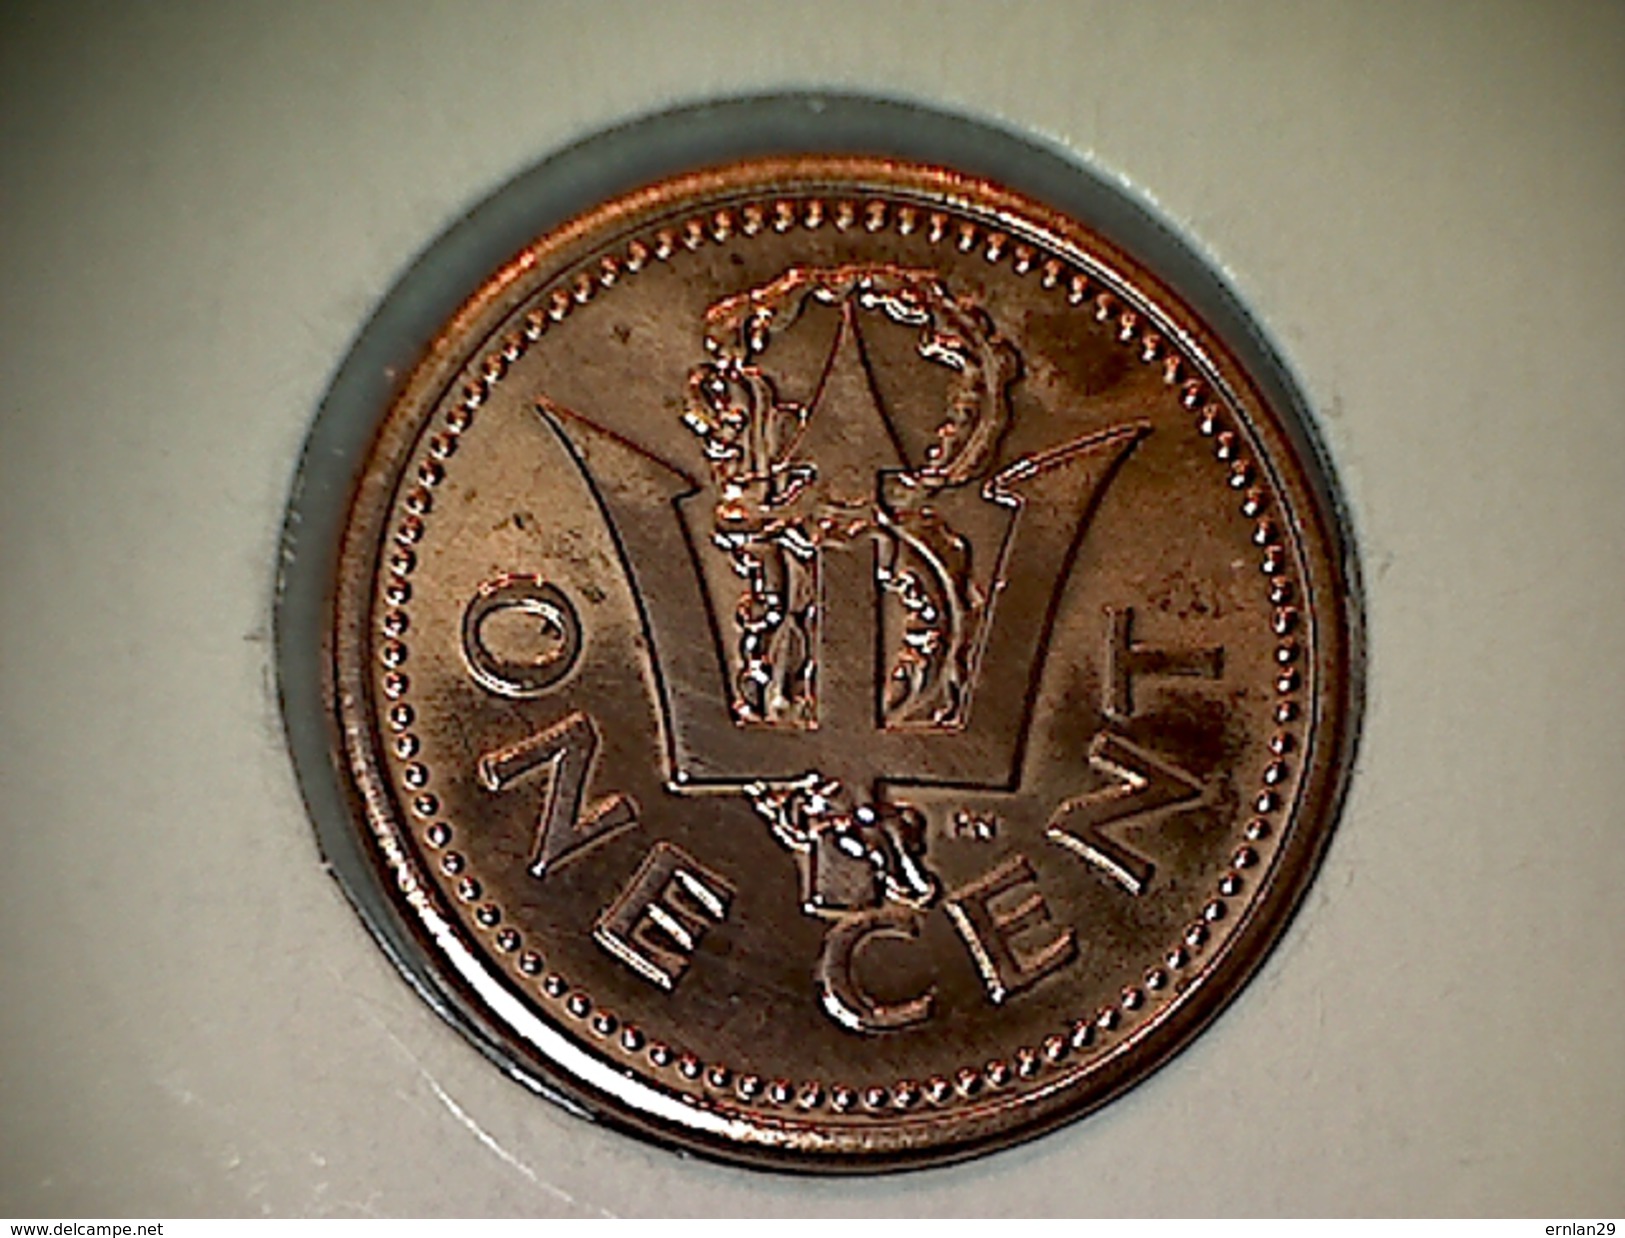 Barbados 1 Cent 1996 - Barbades